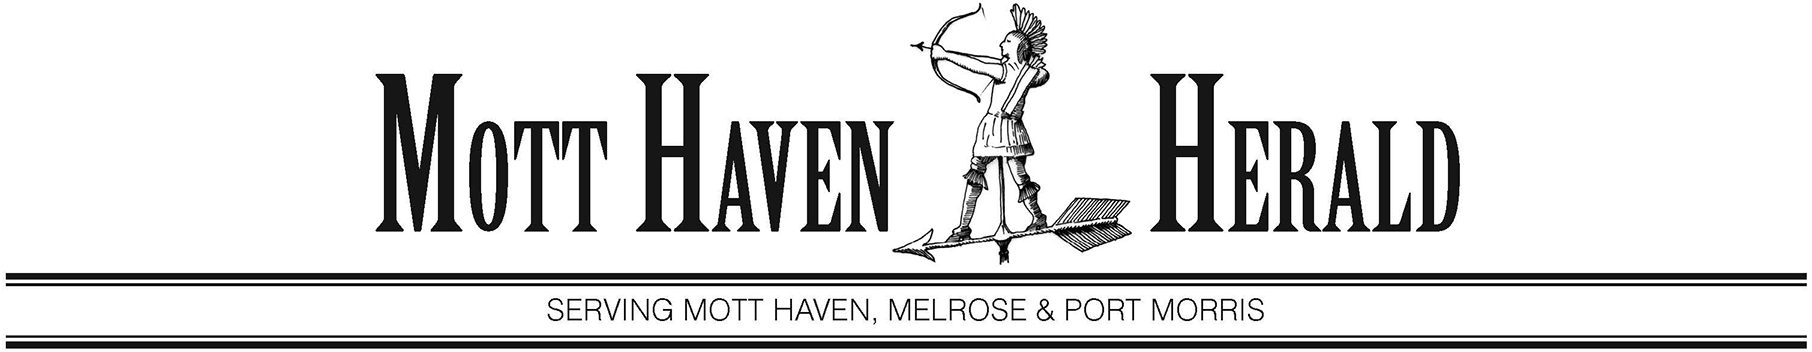 Mott Haven Herald